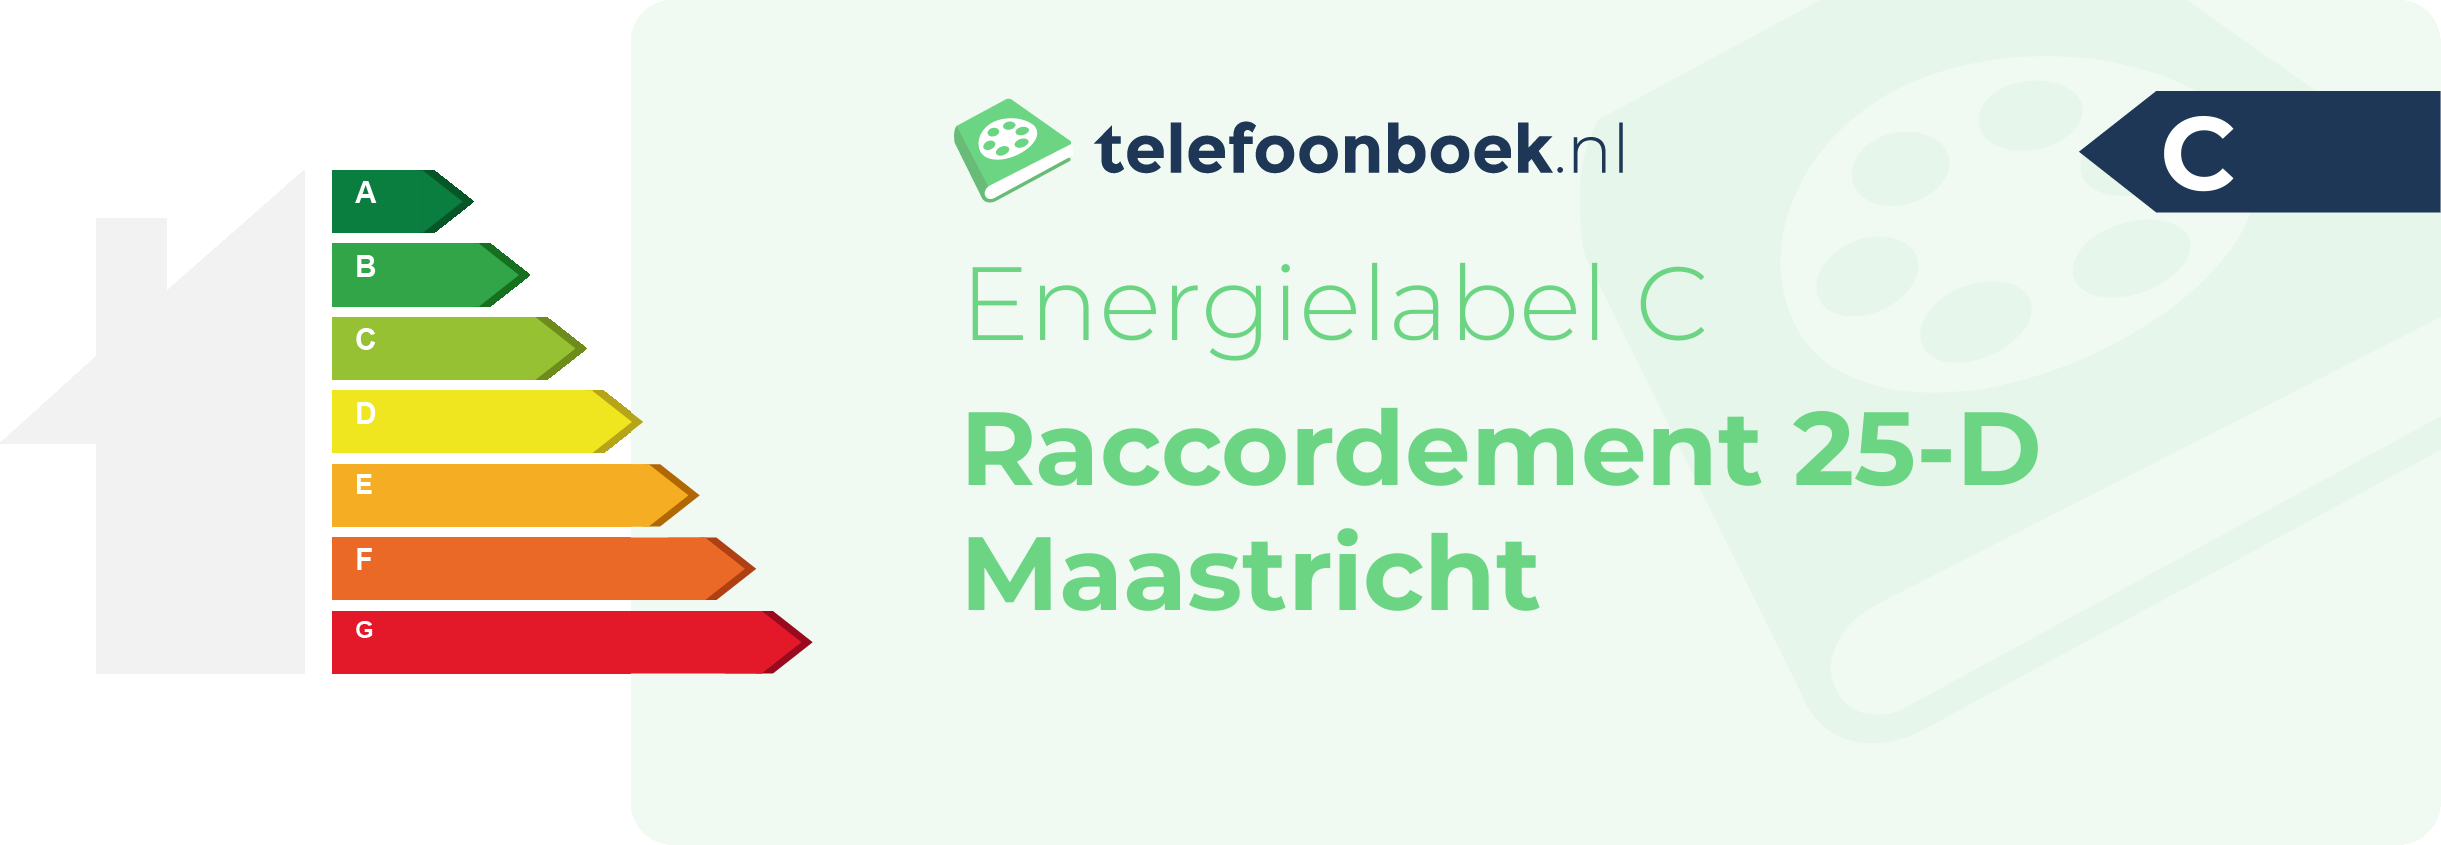 Energielabel Raccordement 25-D Maastricht